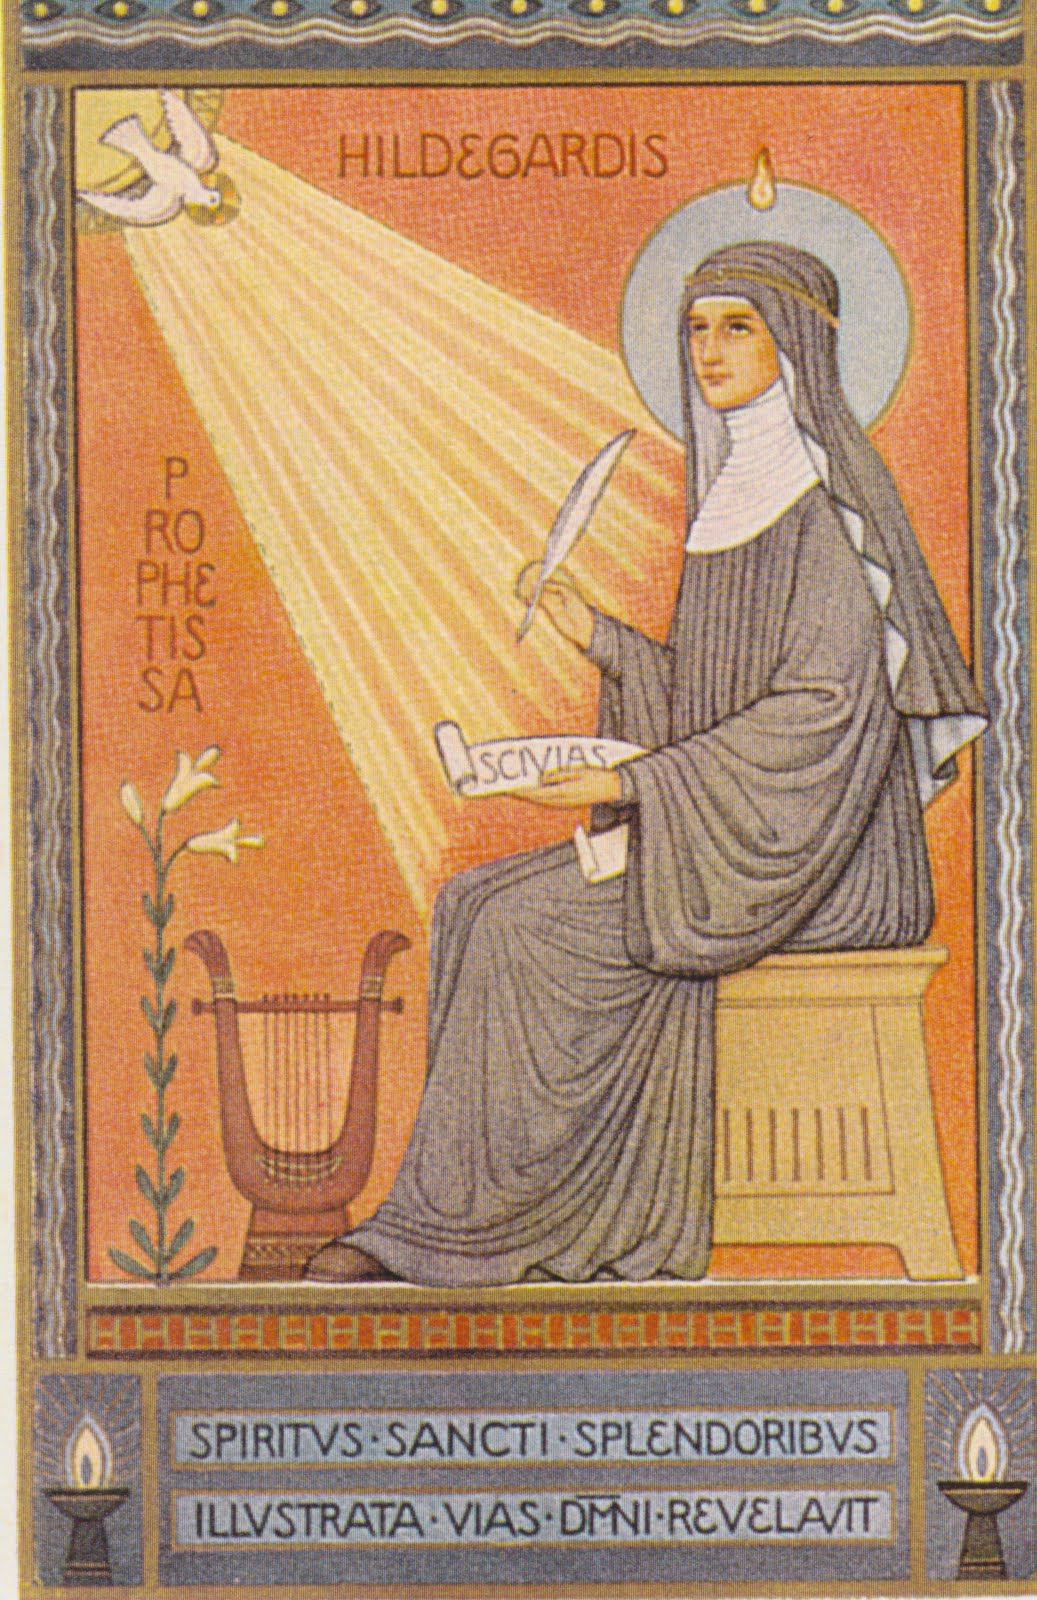 Hildegard of Bingen (1098-1179)